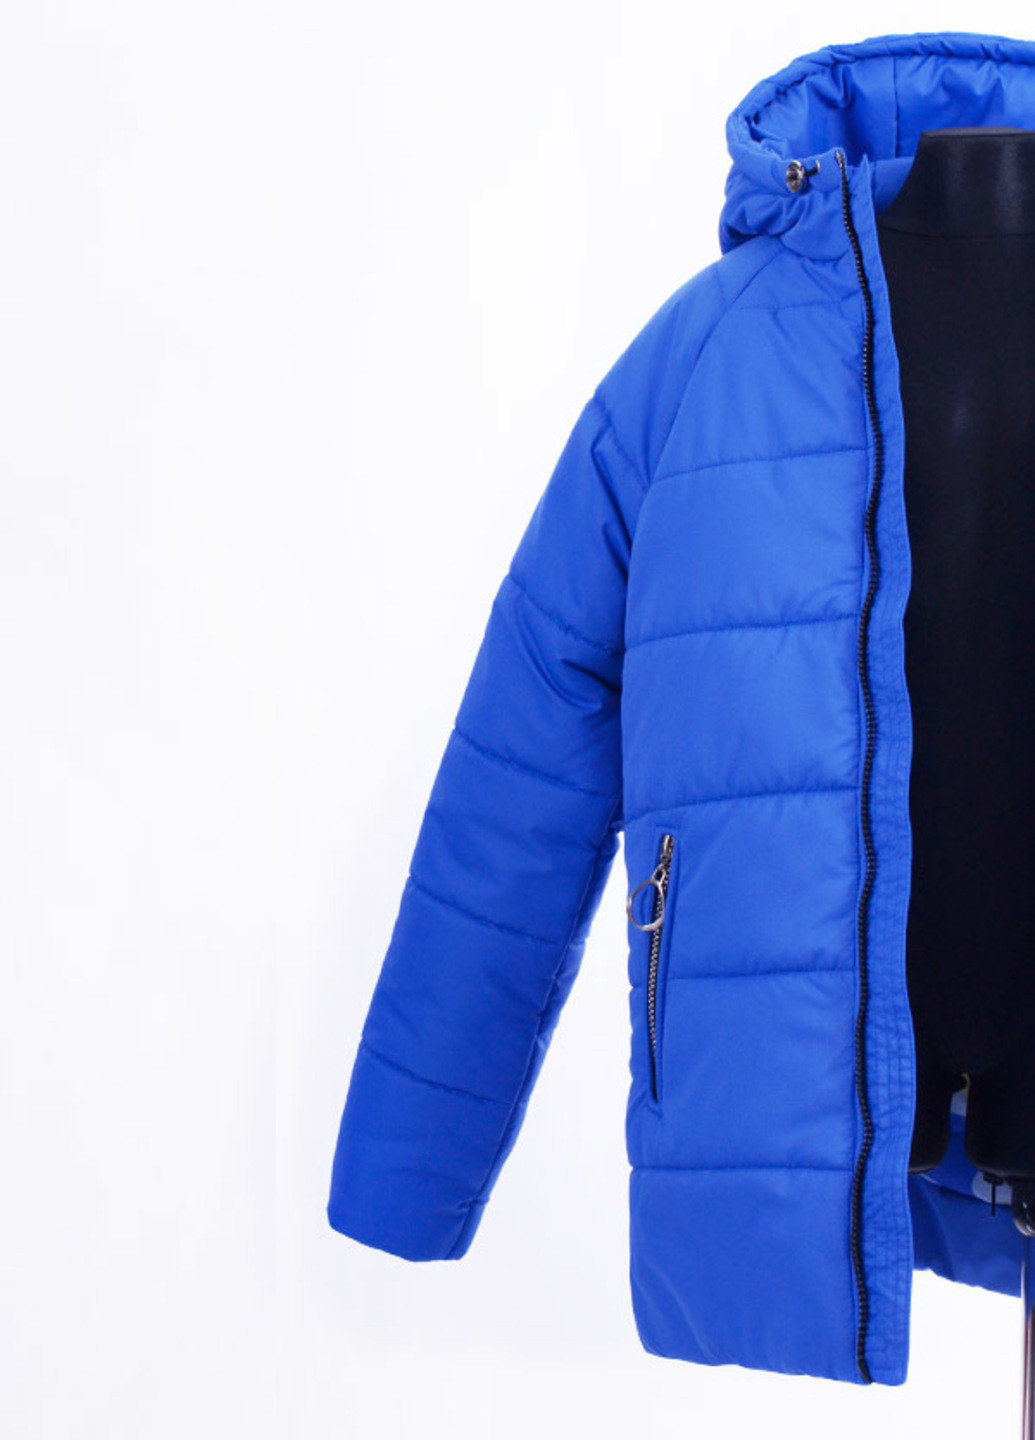 Синя зимня зимова подовжена куртка k35 Luxik удлиненная куртка